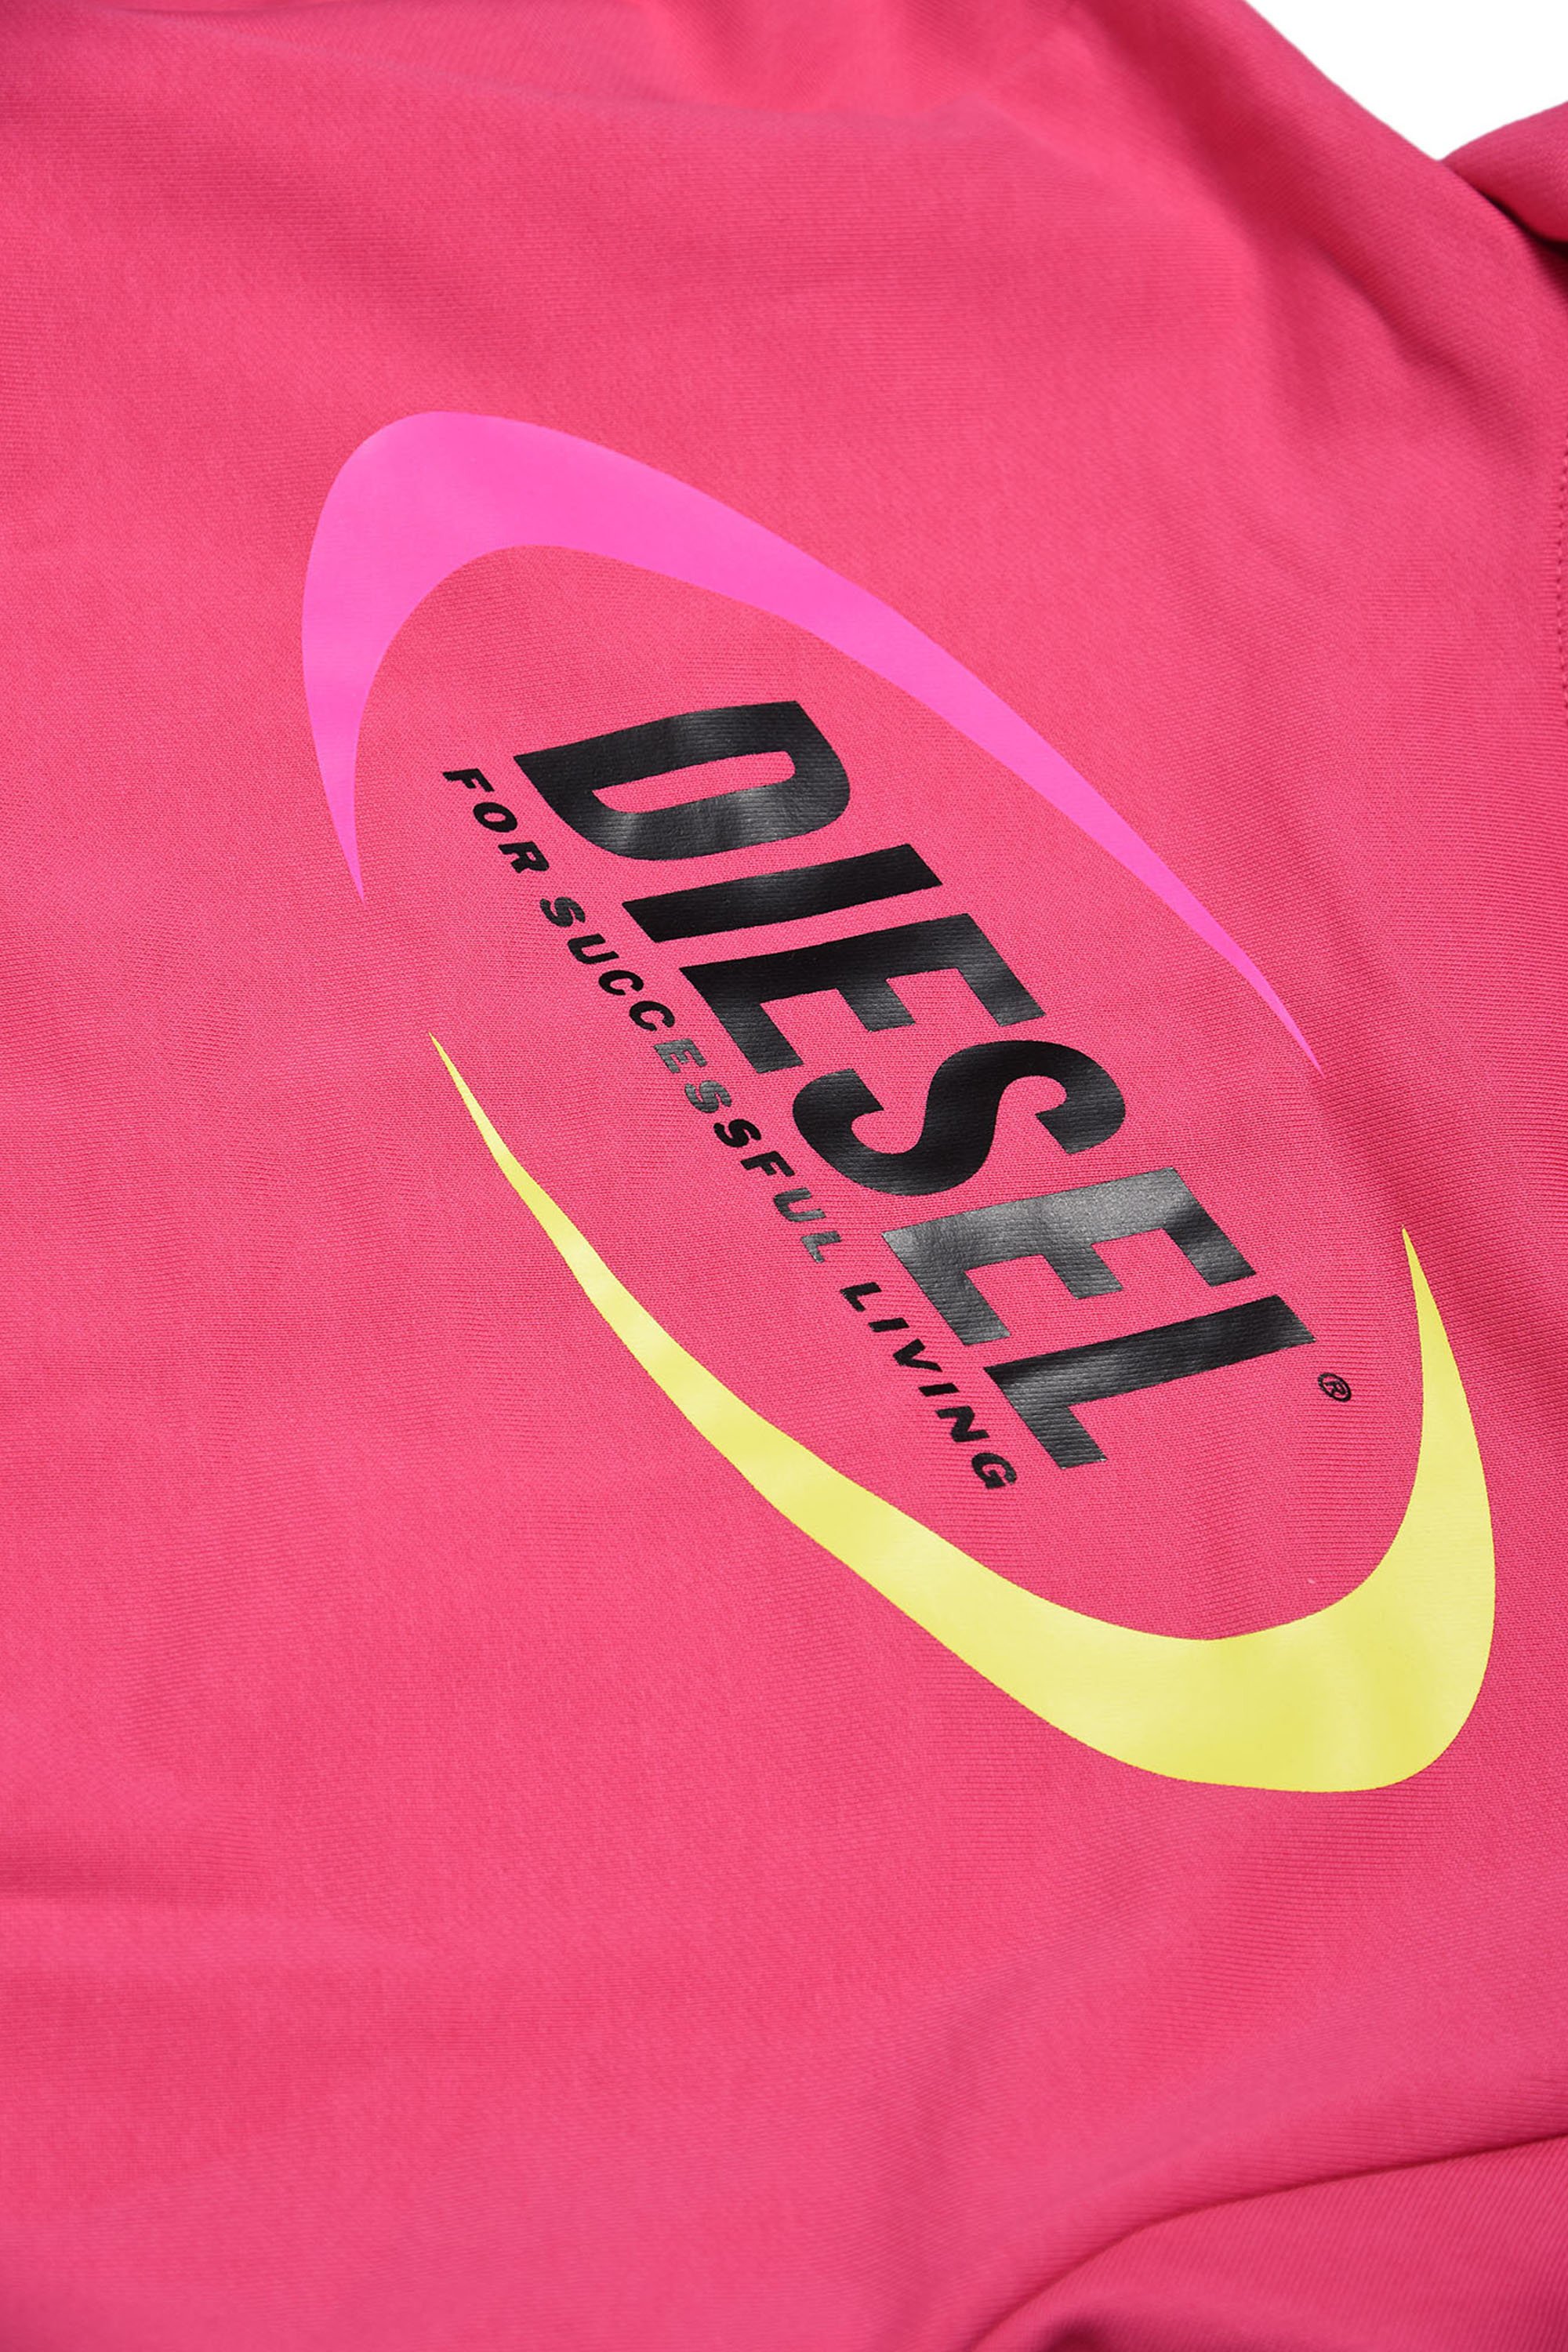 Diesel - MSULTELY, Pink - Image 3